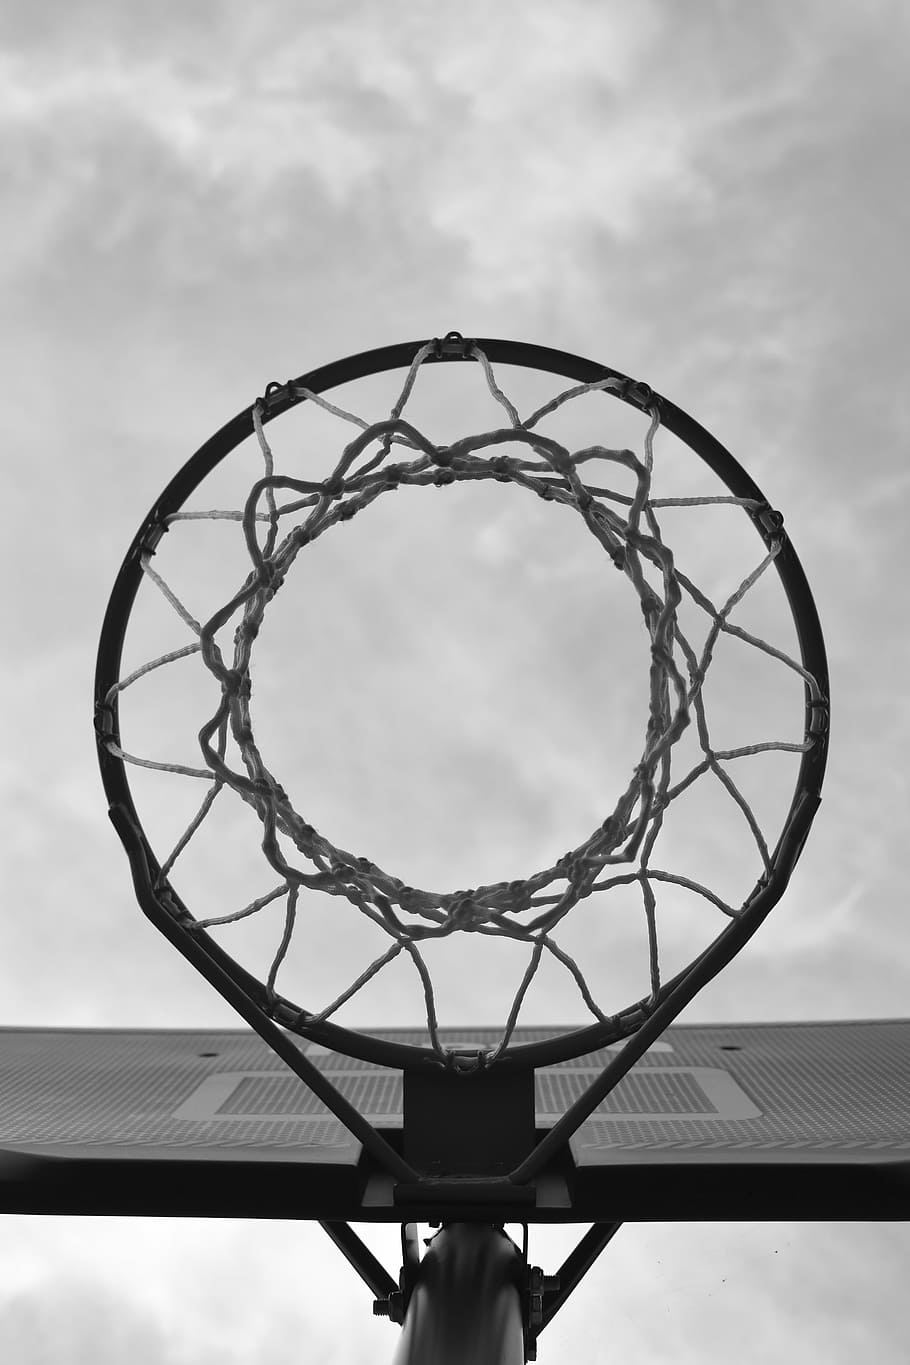 bottom shot photo, basketball hoop, sport, basketball, basket, net, urban, basketball - sport, making a basket, net - sports equipment